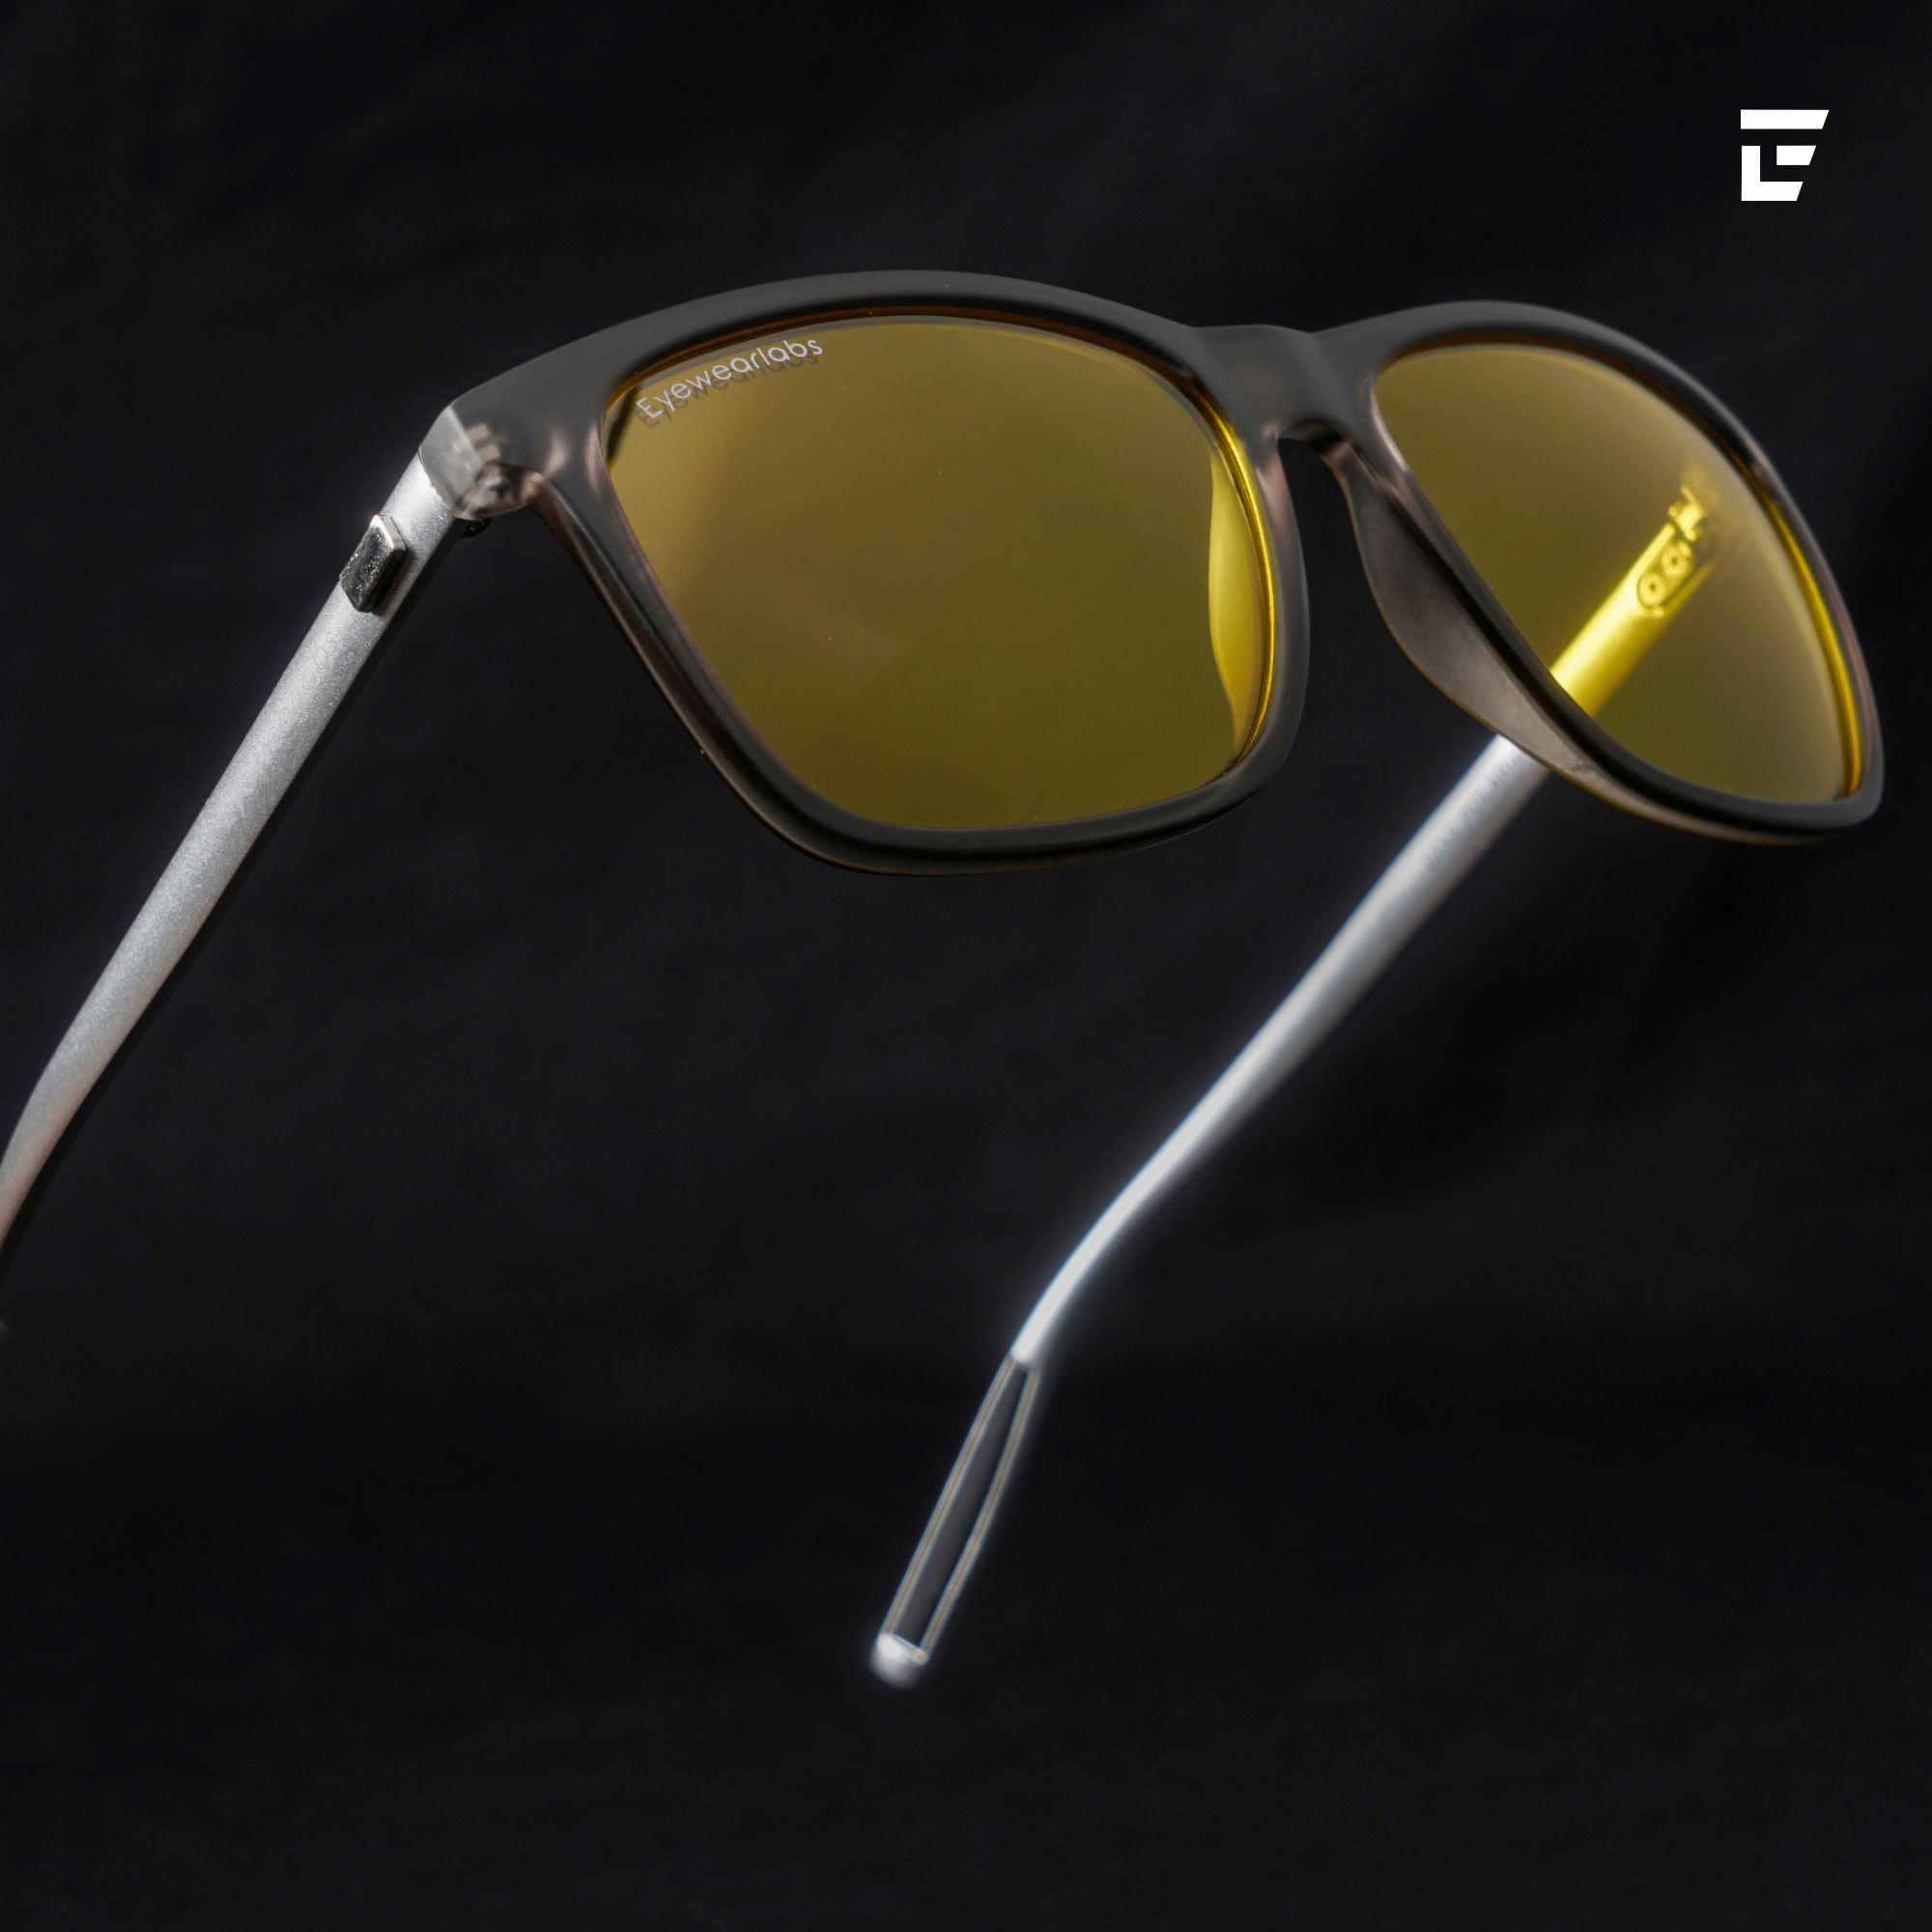 Polarized Sunglasses - Buy Polarized Sunglasses Online at Best Prices In  India | Flipkart.com